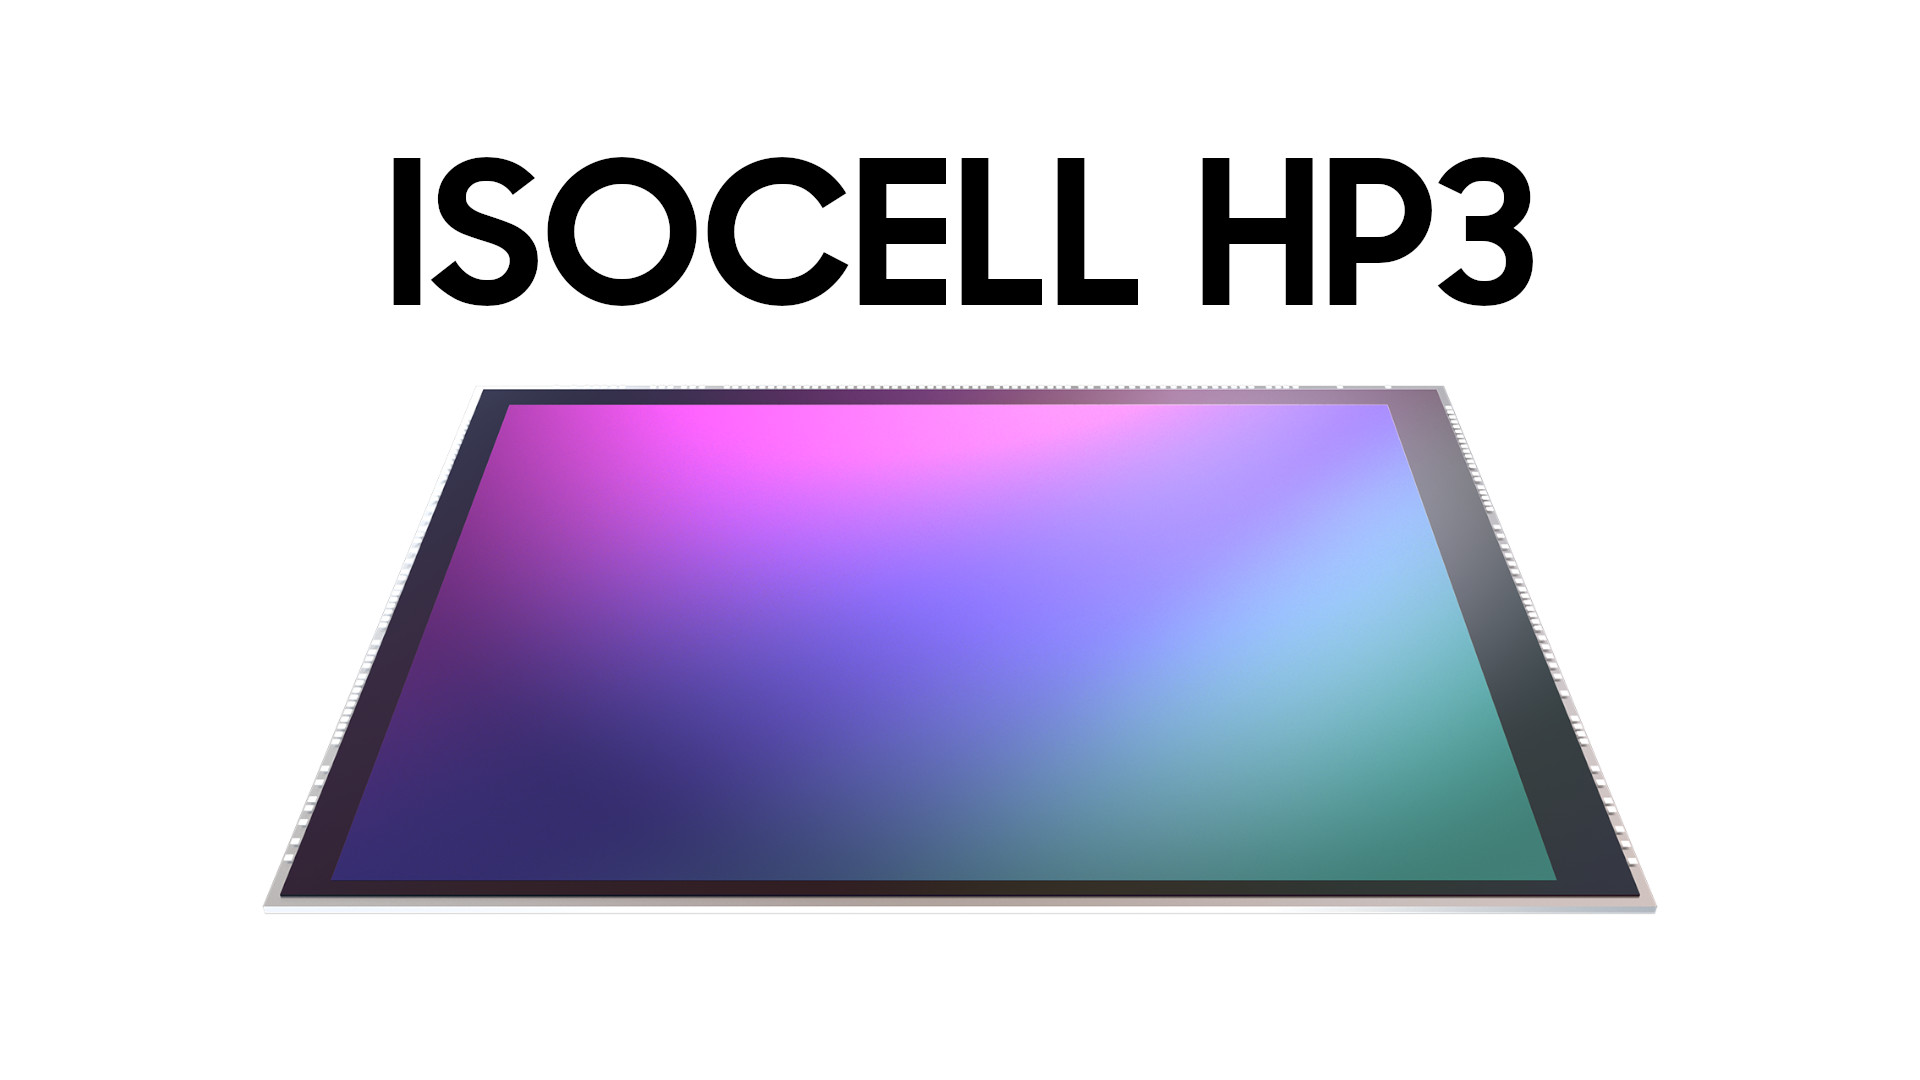 ISOCELL HP3 200MP sensör